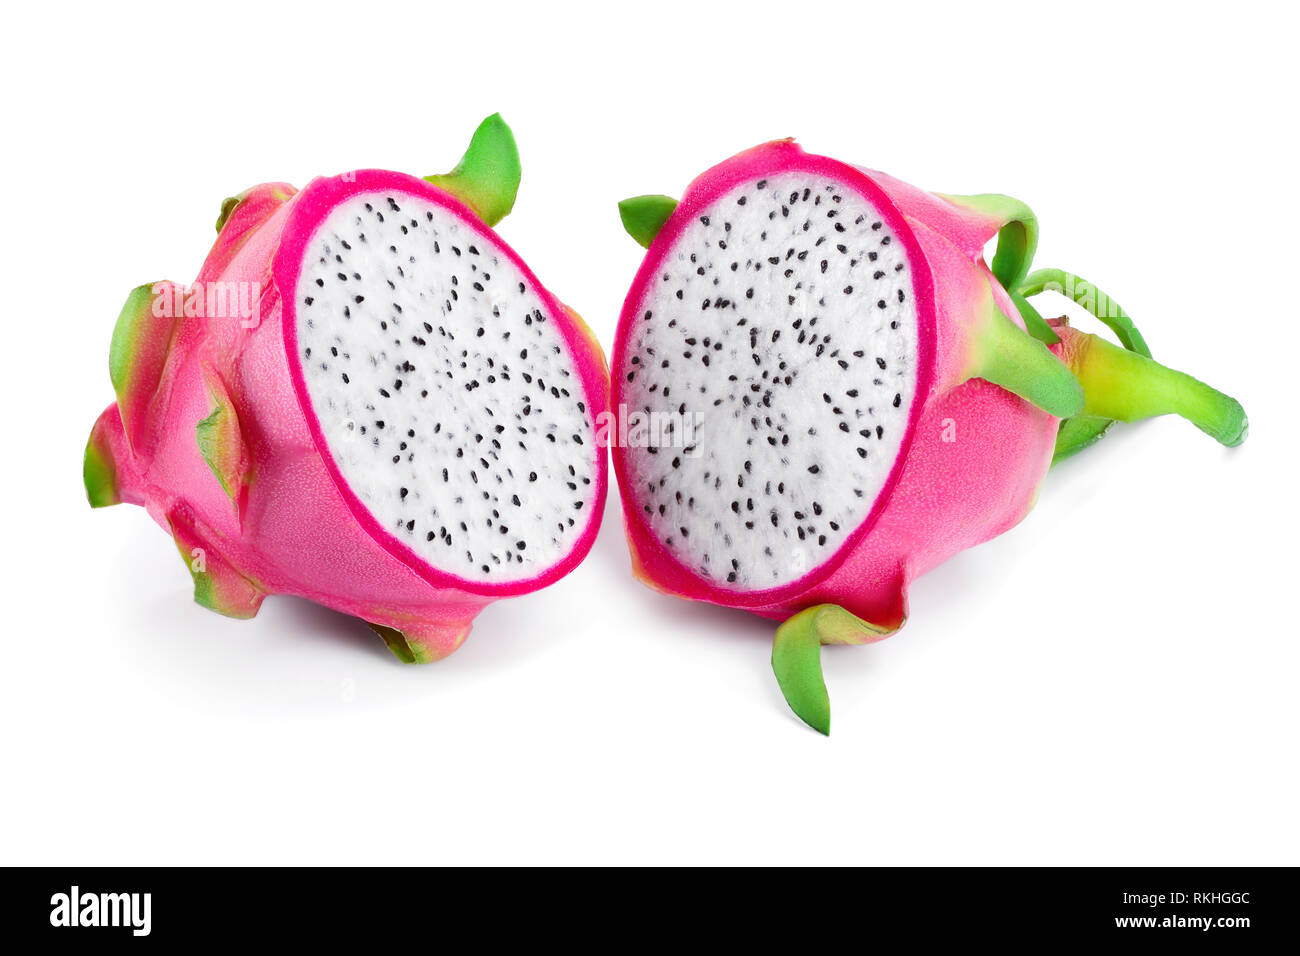 Reif Dragon Obst, pitaya oder Pitahaya auf weißem Hintergrund, Obst gesund  Konzept Stockfotografie - Alamy